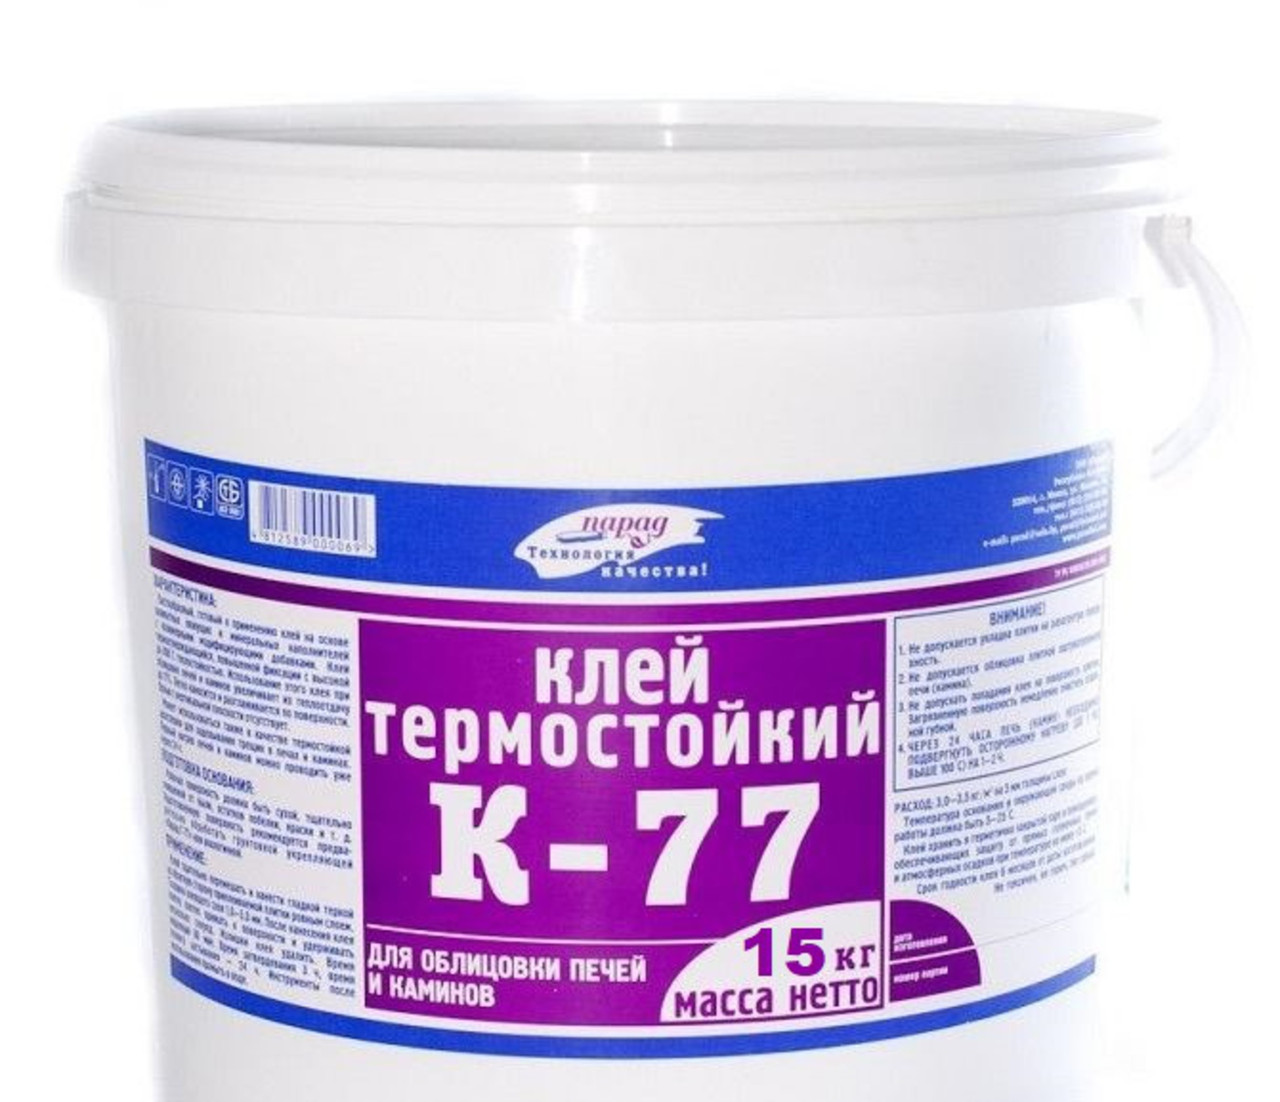 К-77 термостойкий клей, 15 кг